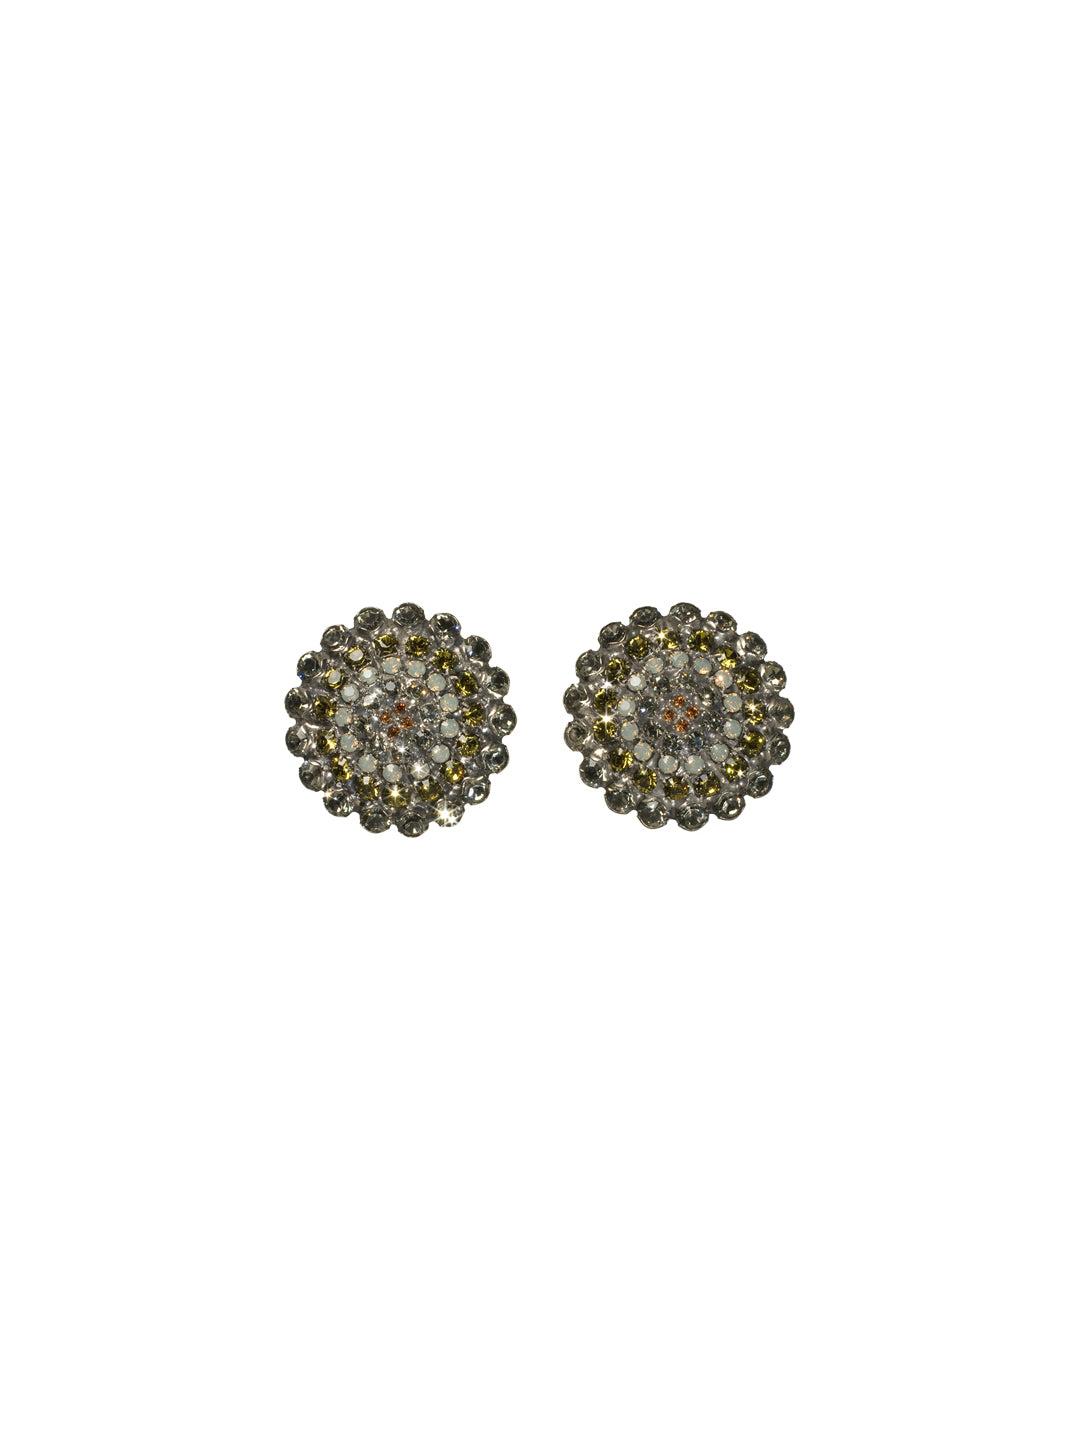 Crystal Target Clip Earring Stud Earrings - ECK1CASCJ